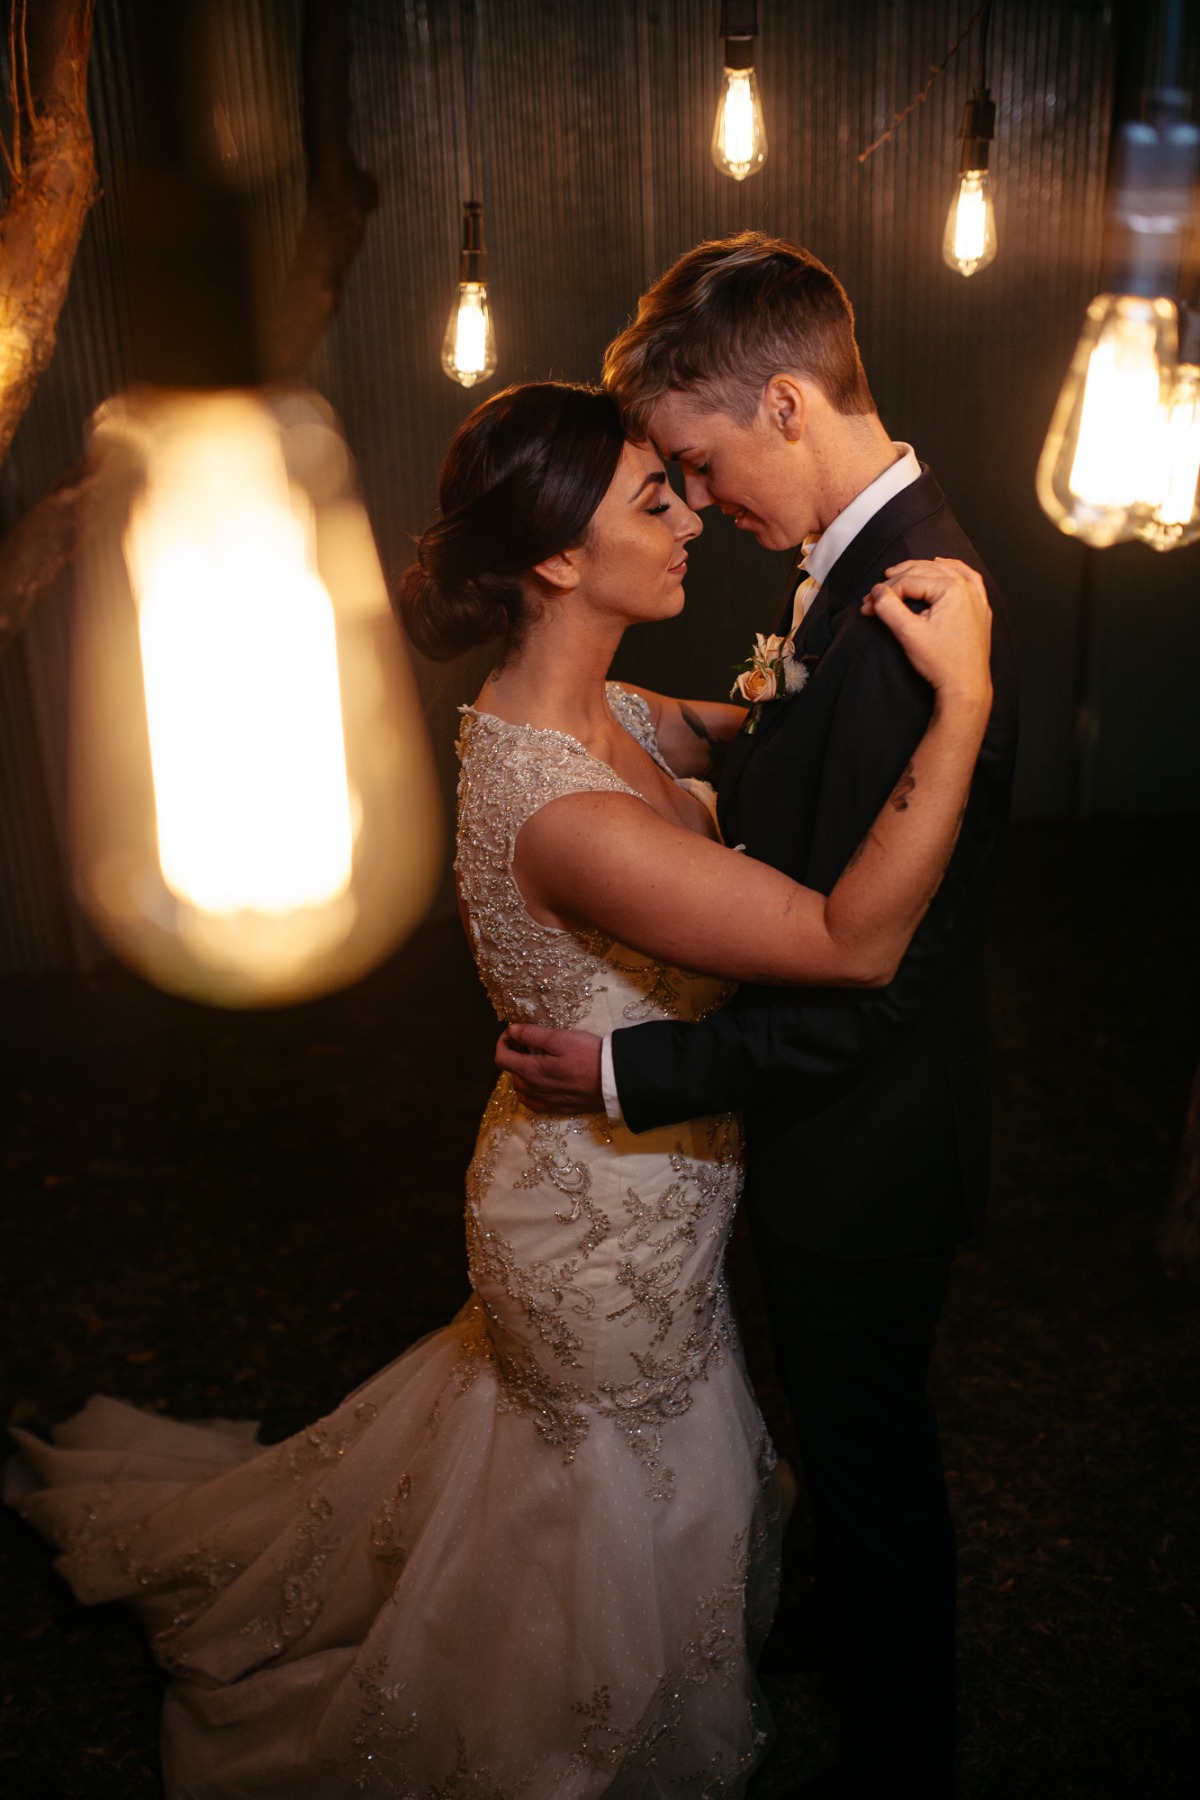 wedding lighting ideas